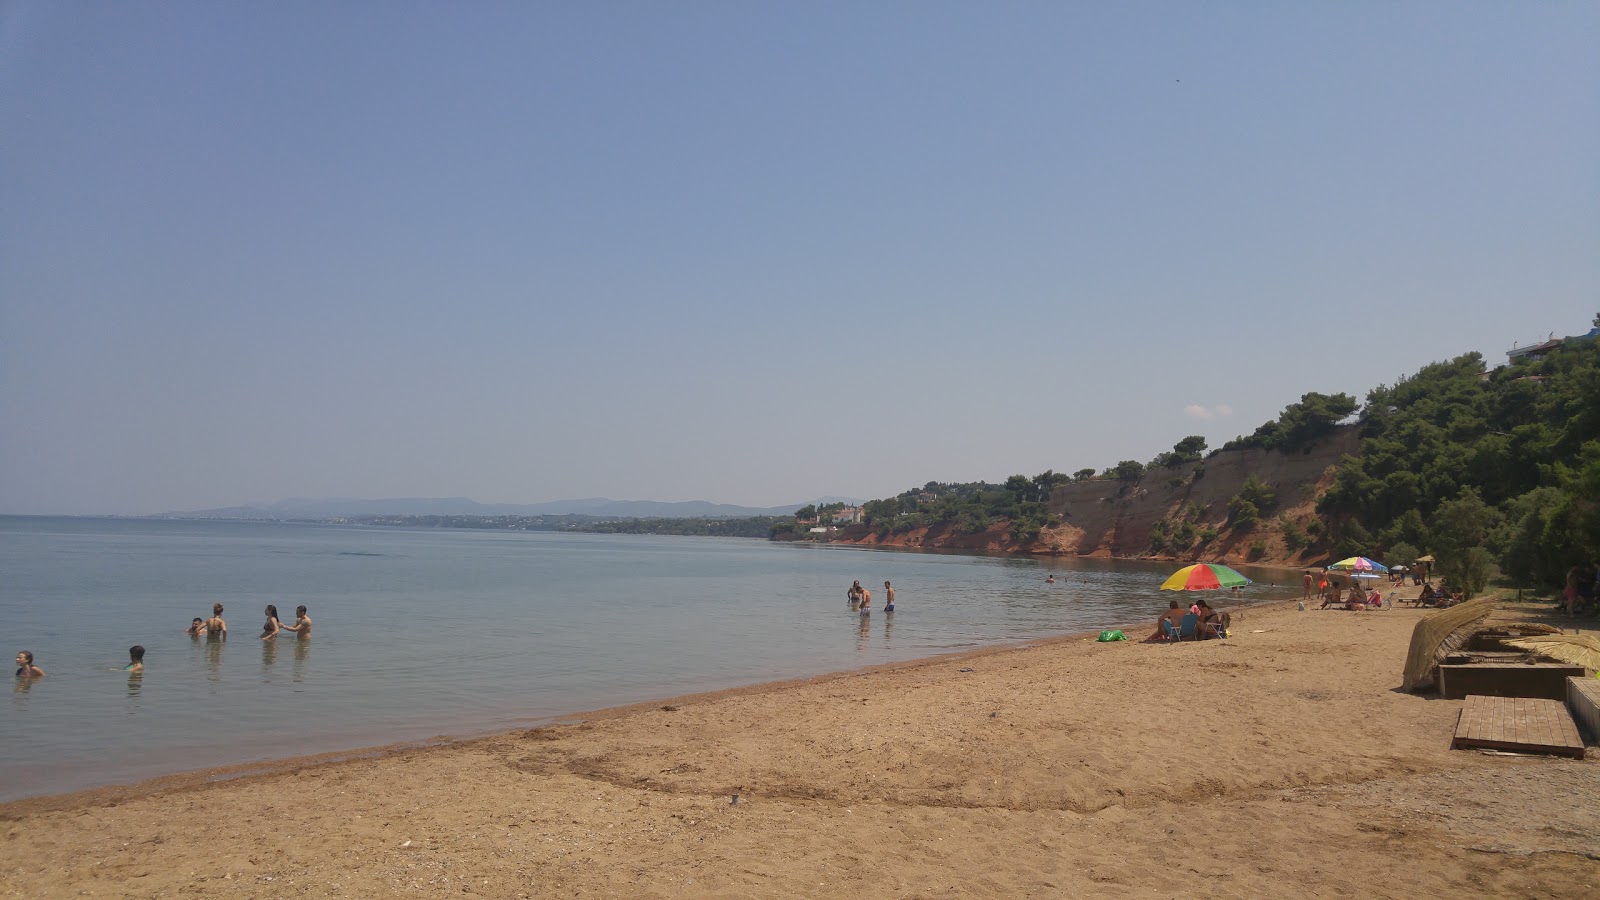 Avlidas beach'in fotoğrafı kısmen temiz temizlik seviyesi ile